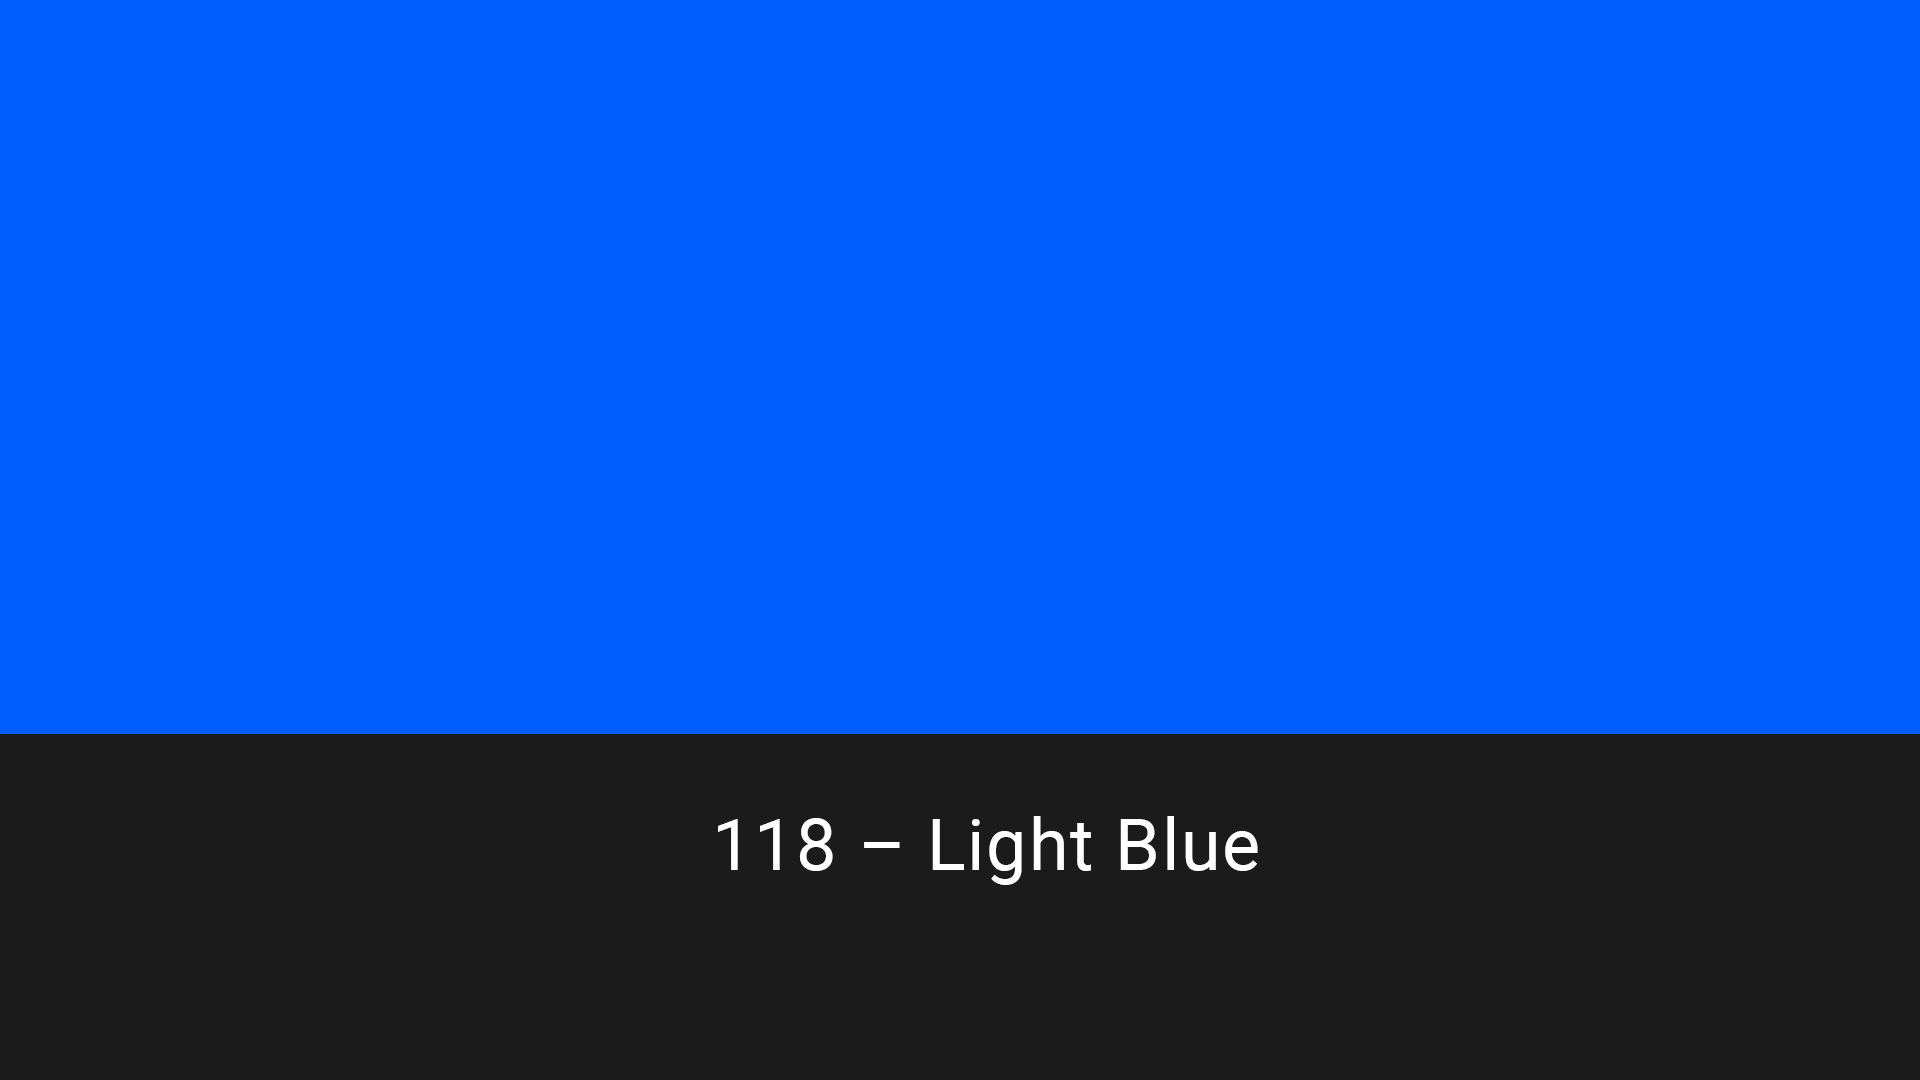 Cotech filters 118 Light Blue